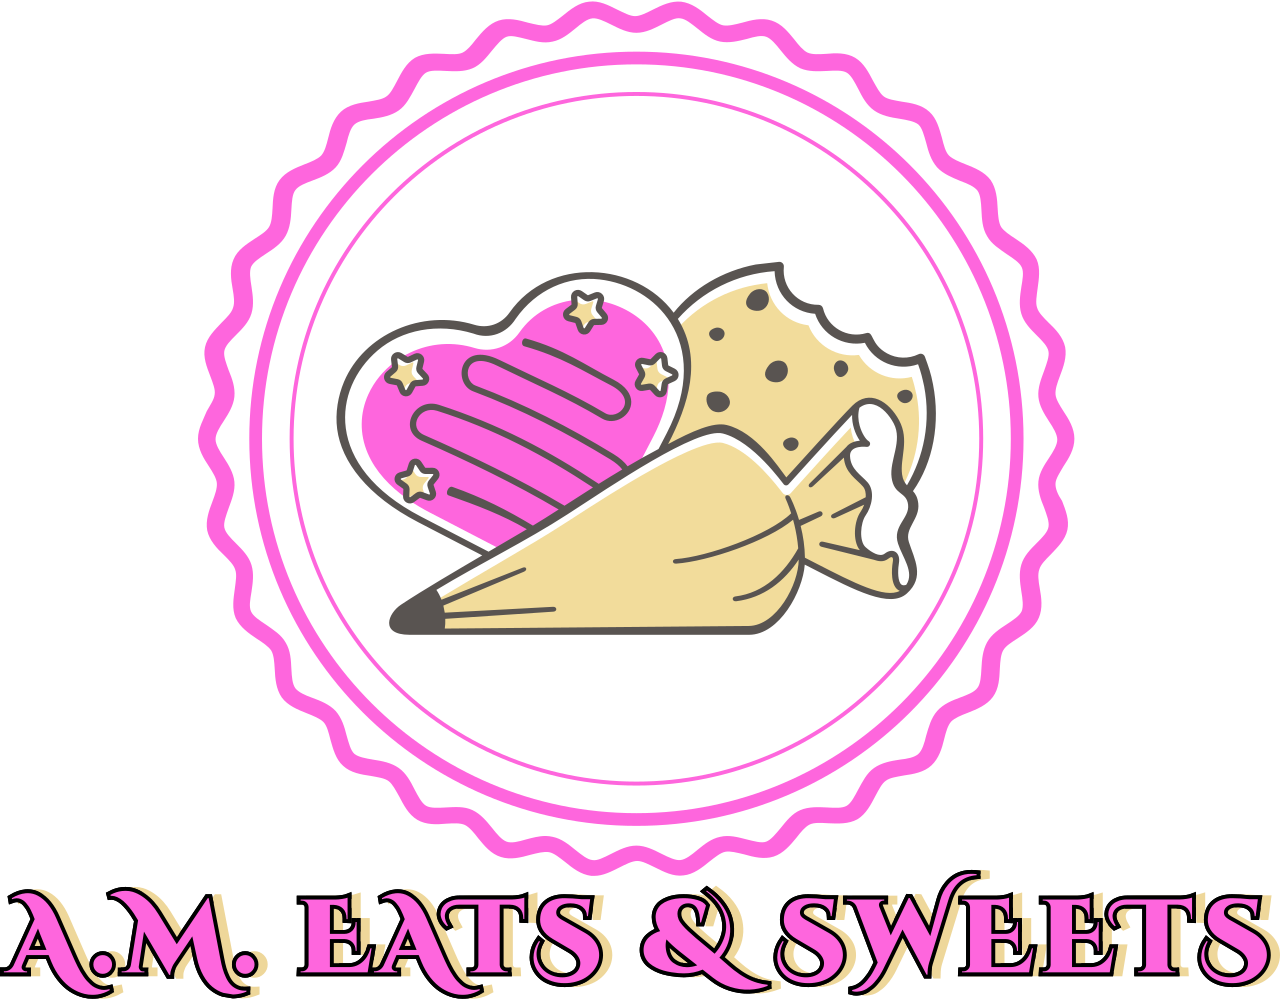 A.M. Eats & Sweets's logo